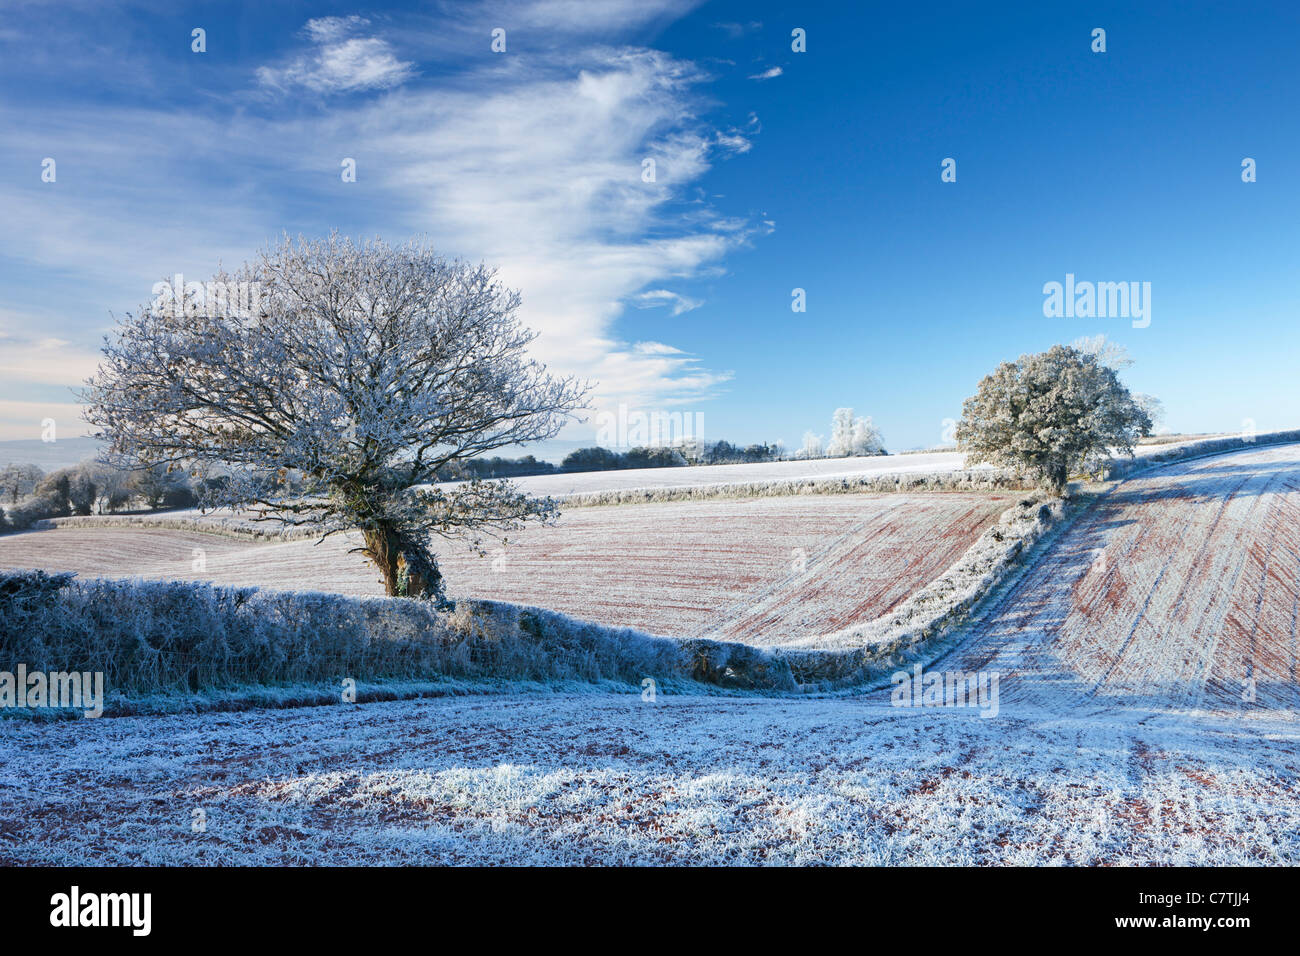 Trasformata per forte gradiente smerigliati terreni coltivati e alberi in inverno, prua, metà Devon, Inghilterra. Inverno (dicembre 2010). Foto Stock